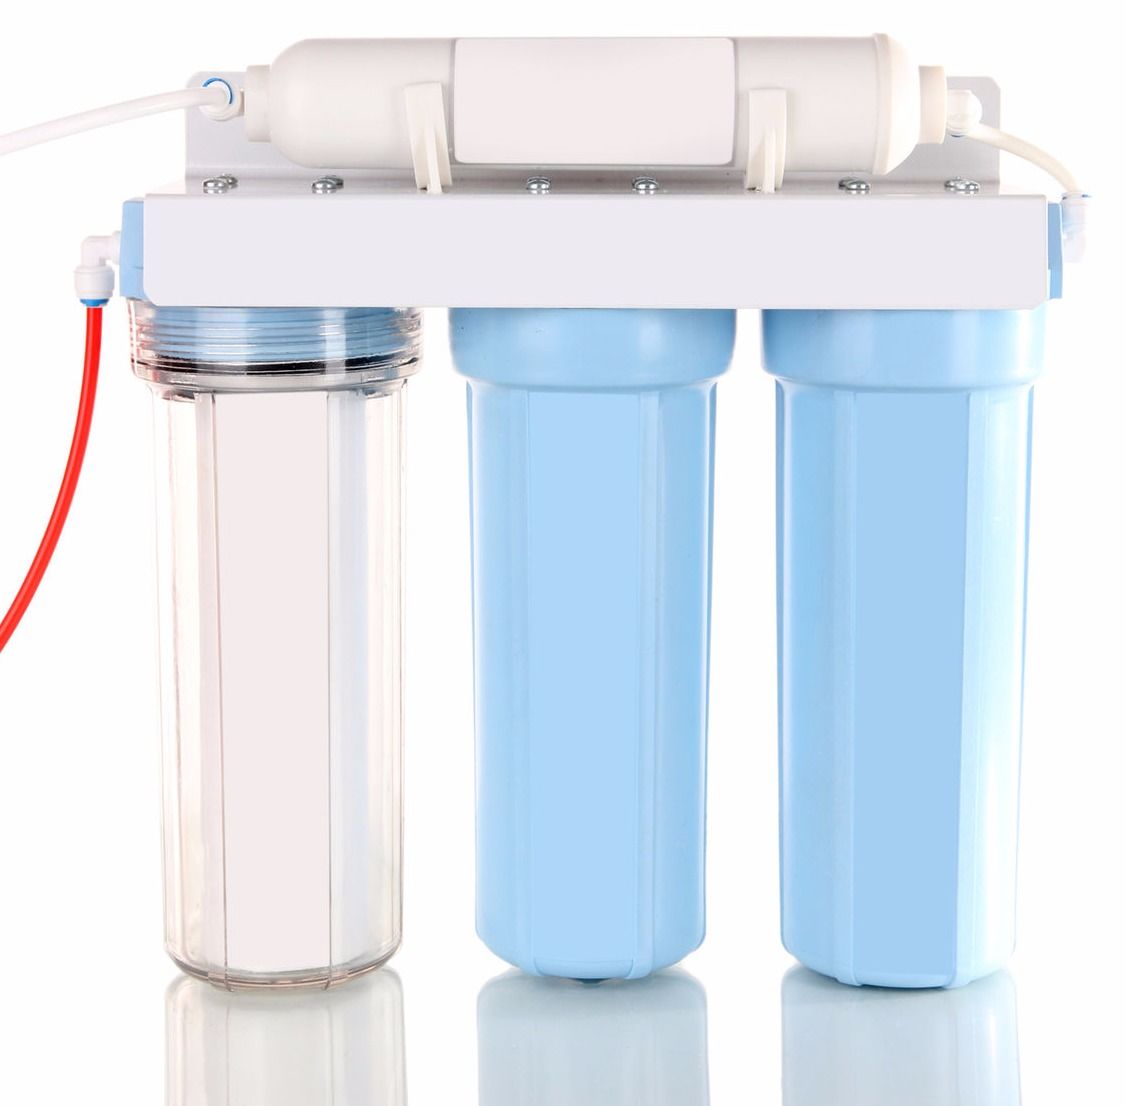 Проточный фильтр для воды. Фильтр для воды с индикатором загрязненности. Фильтры для очистки воды от извести